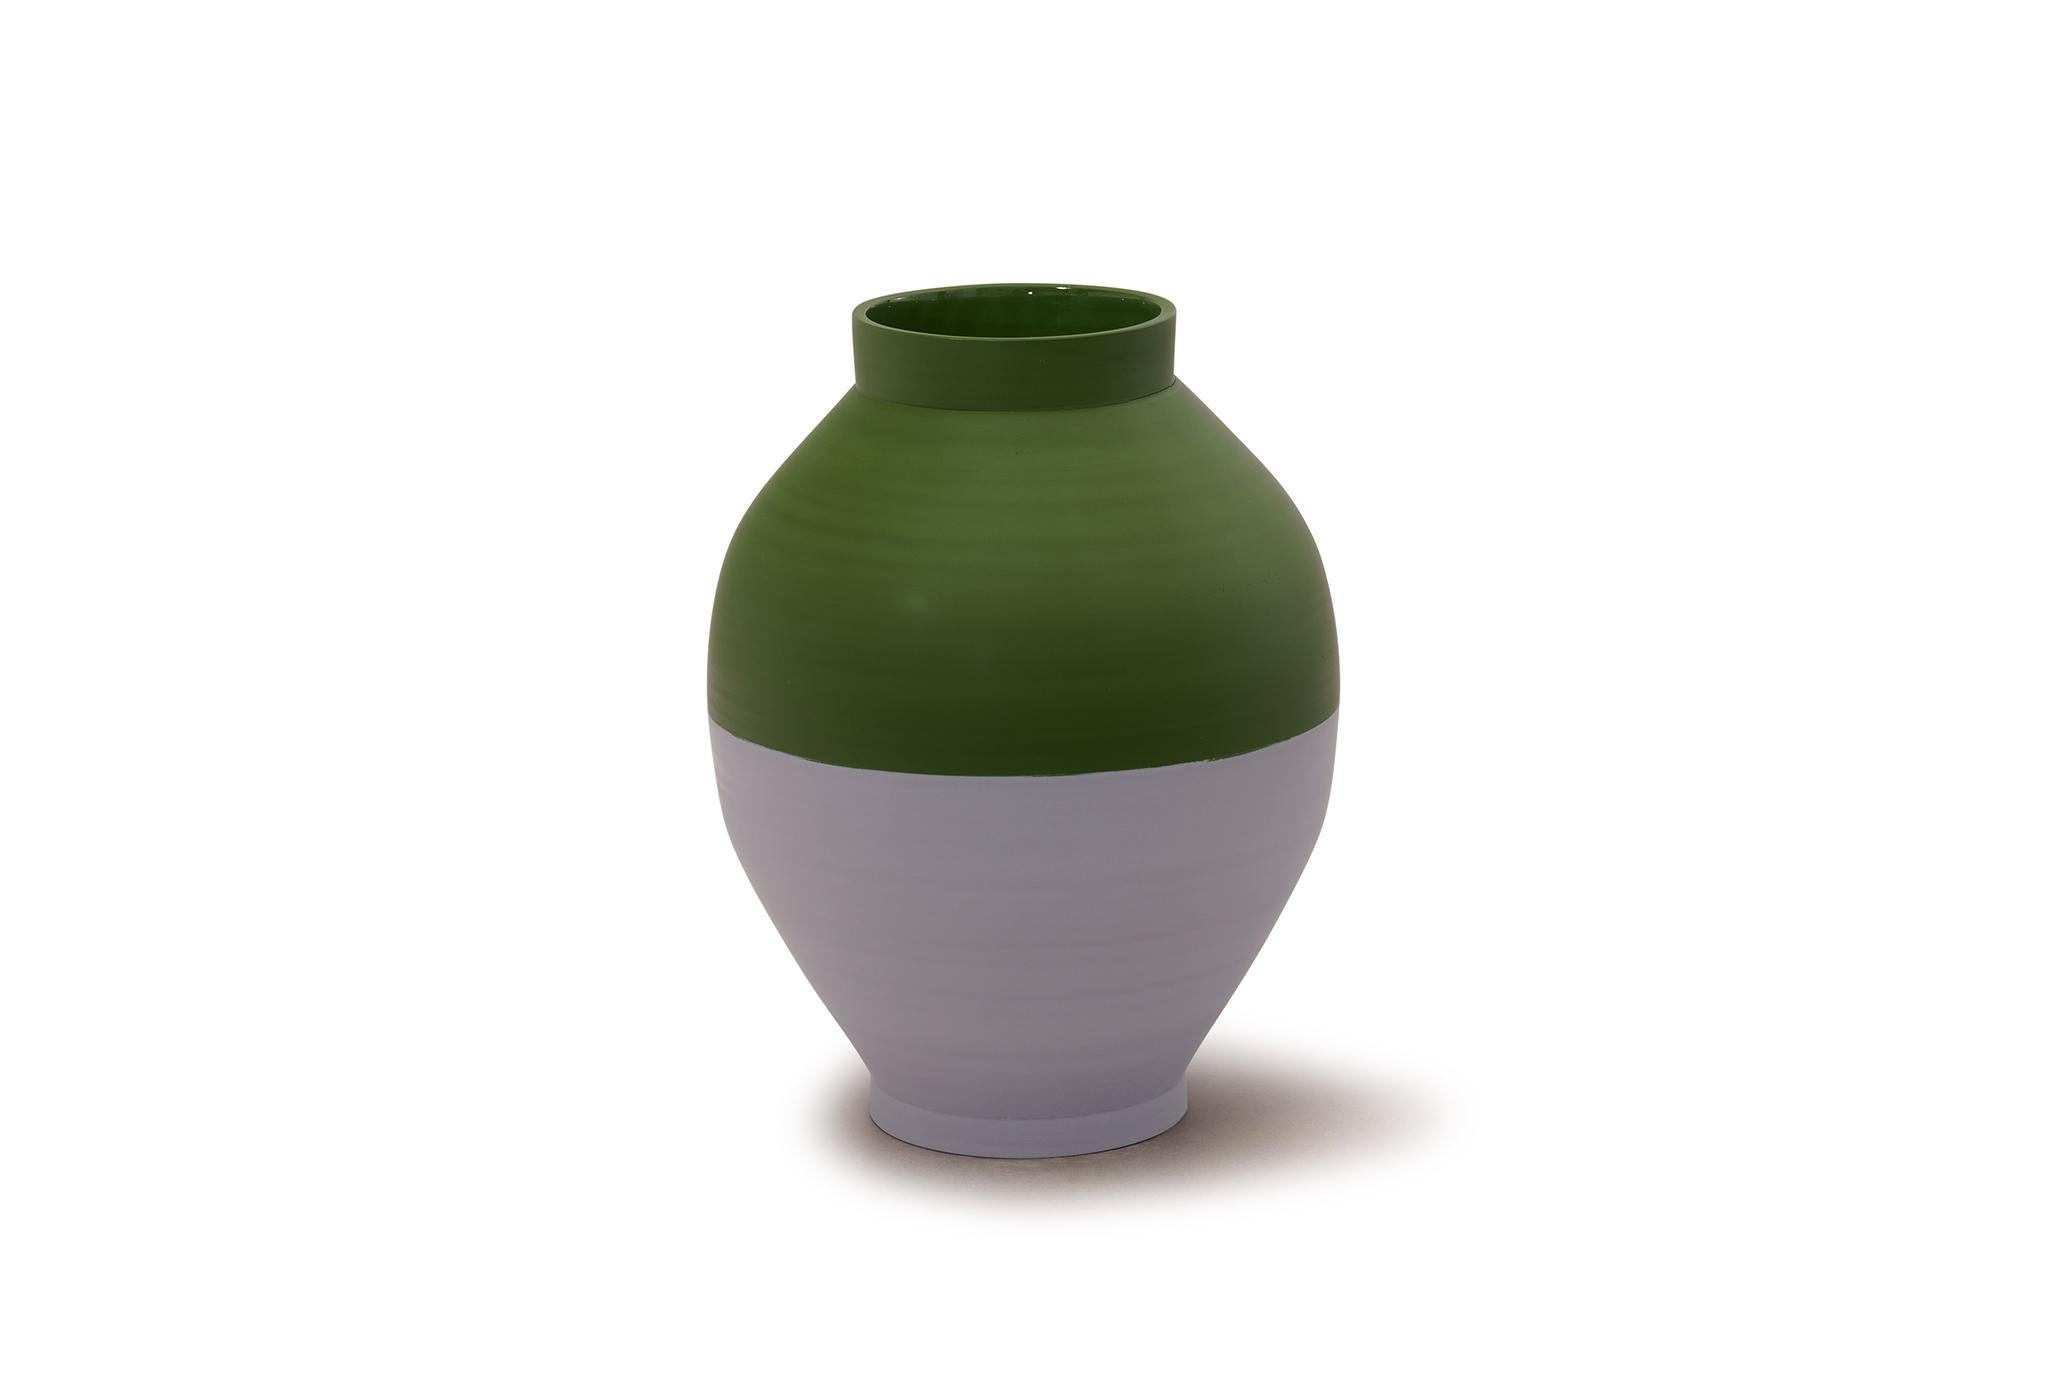 Vase Half Half de Jung Hong
Pièce unique
Dimensions : L 23 x D 23 x H 31,5 cm
Matériaux : Porcelaine 

J'utilise la technique du 